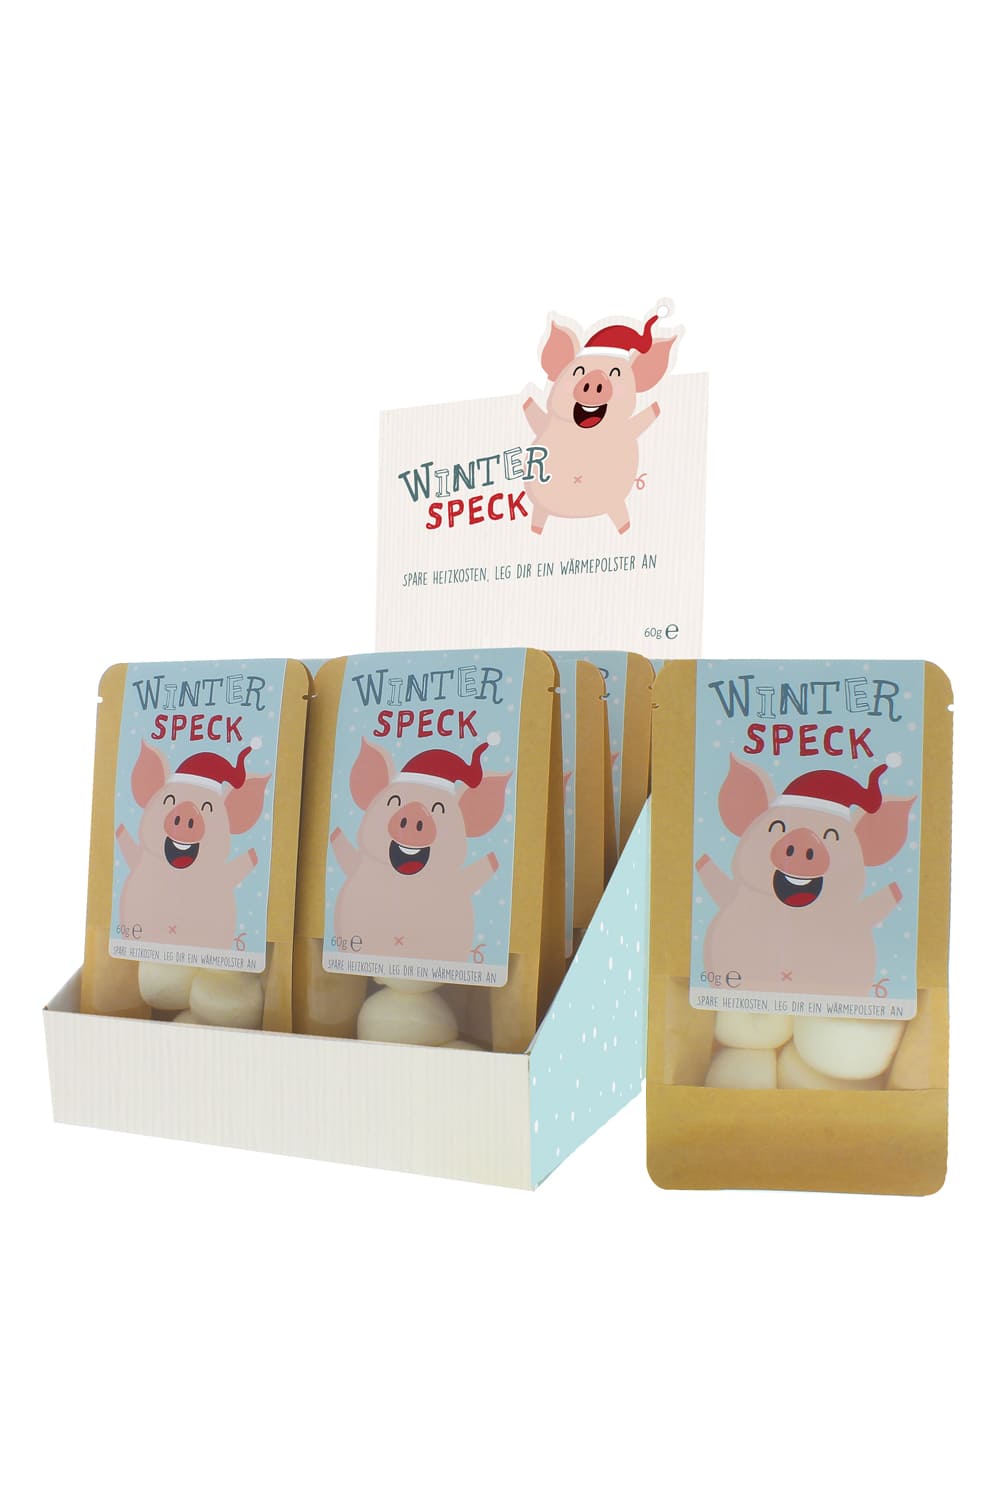 Diese Winterspeck Marshmallows sind einfach nur witzig! Eine kreative und leckere Geschenkidee rund um die Weihnachtszeit und Winterzeit! Jede Verpackung enthaelt 60g Marshmallows! Ein ideales Weihnachtsgeschenk oder Mitbringsel fuer die Weihnachtszeit. Also ein perfektes Weihnachtsgeschenk mit Pfiff und Humor!